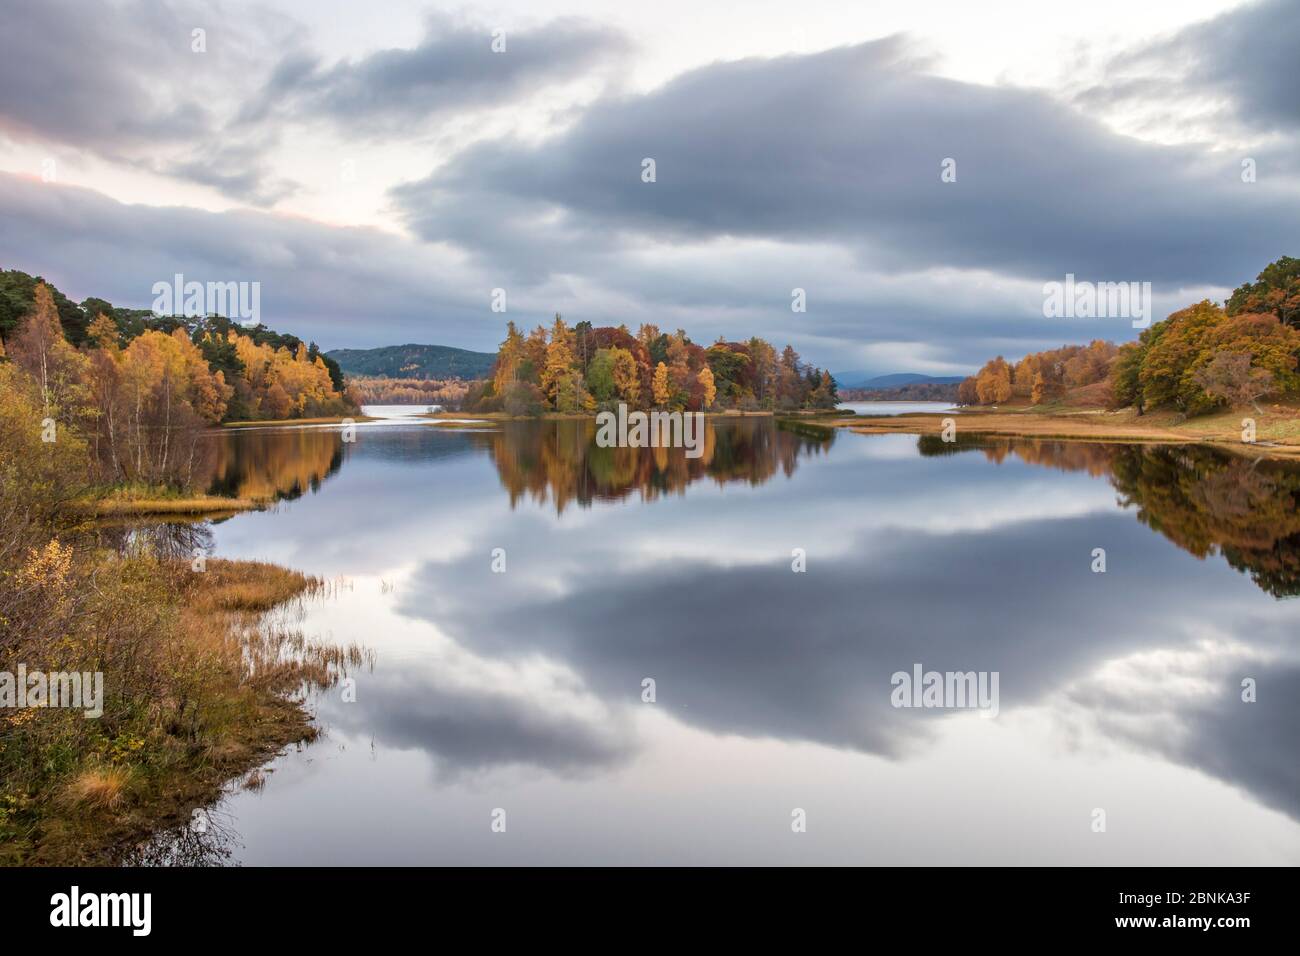 Farben des Herbstes und stürmischen Wolken in den ruhigen Wassern des Loch Insh, Cairngorms National Park, Schottland, UK, November 2015 wider. Stockfoto